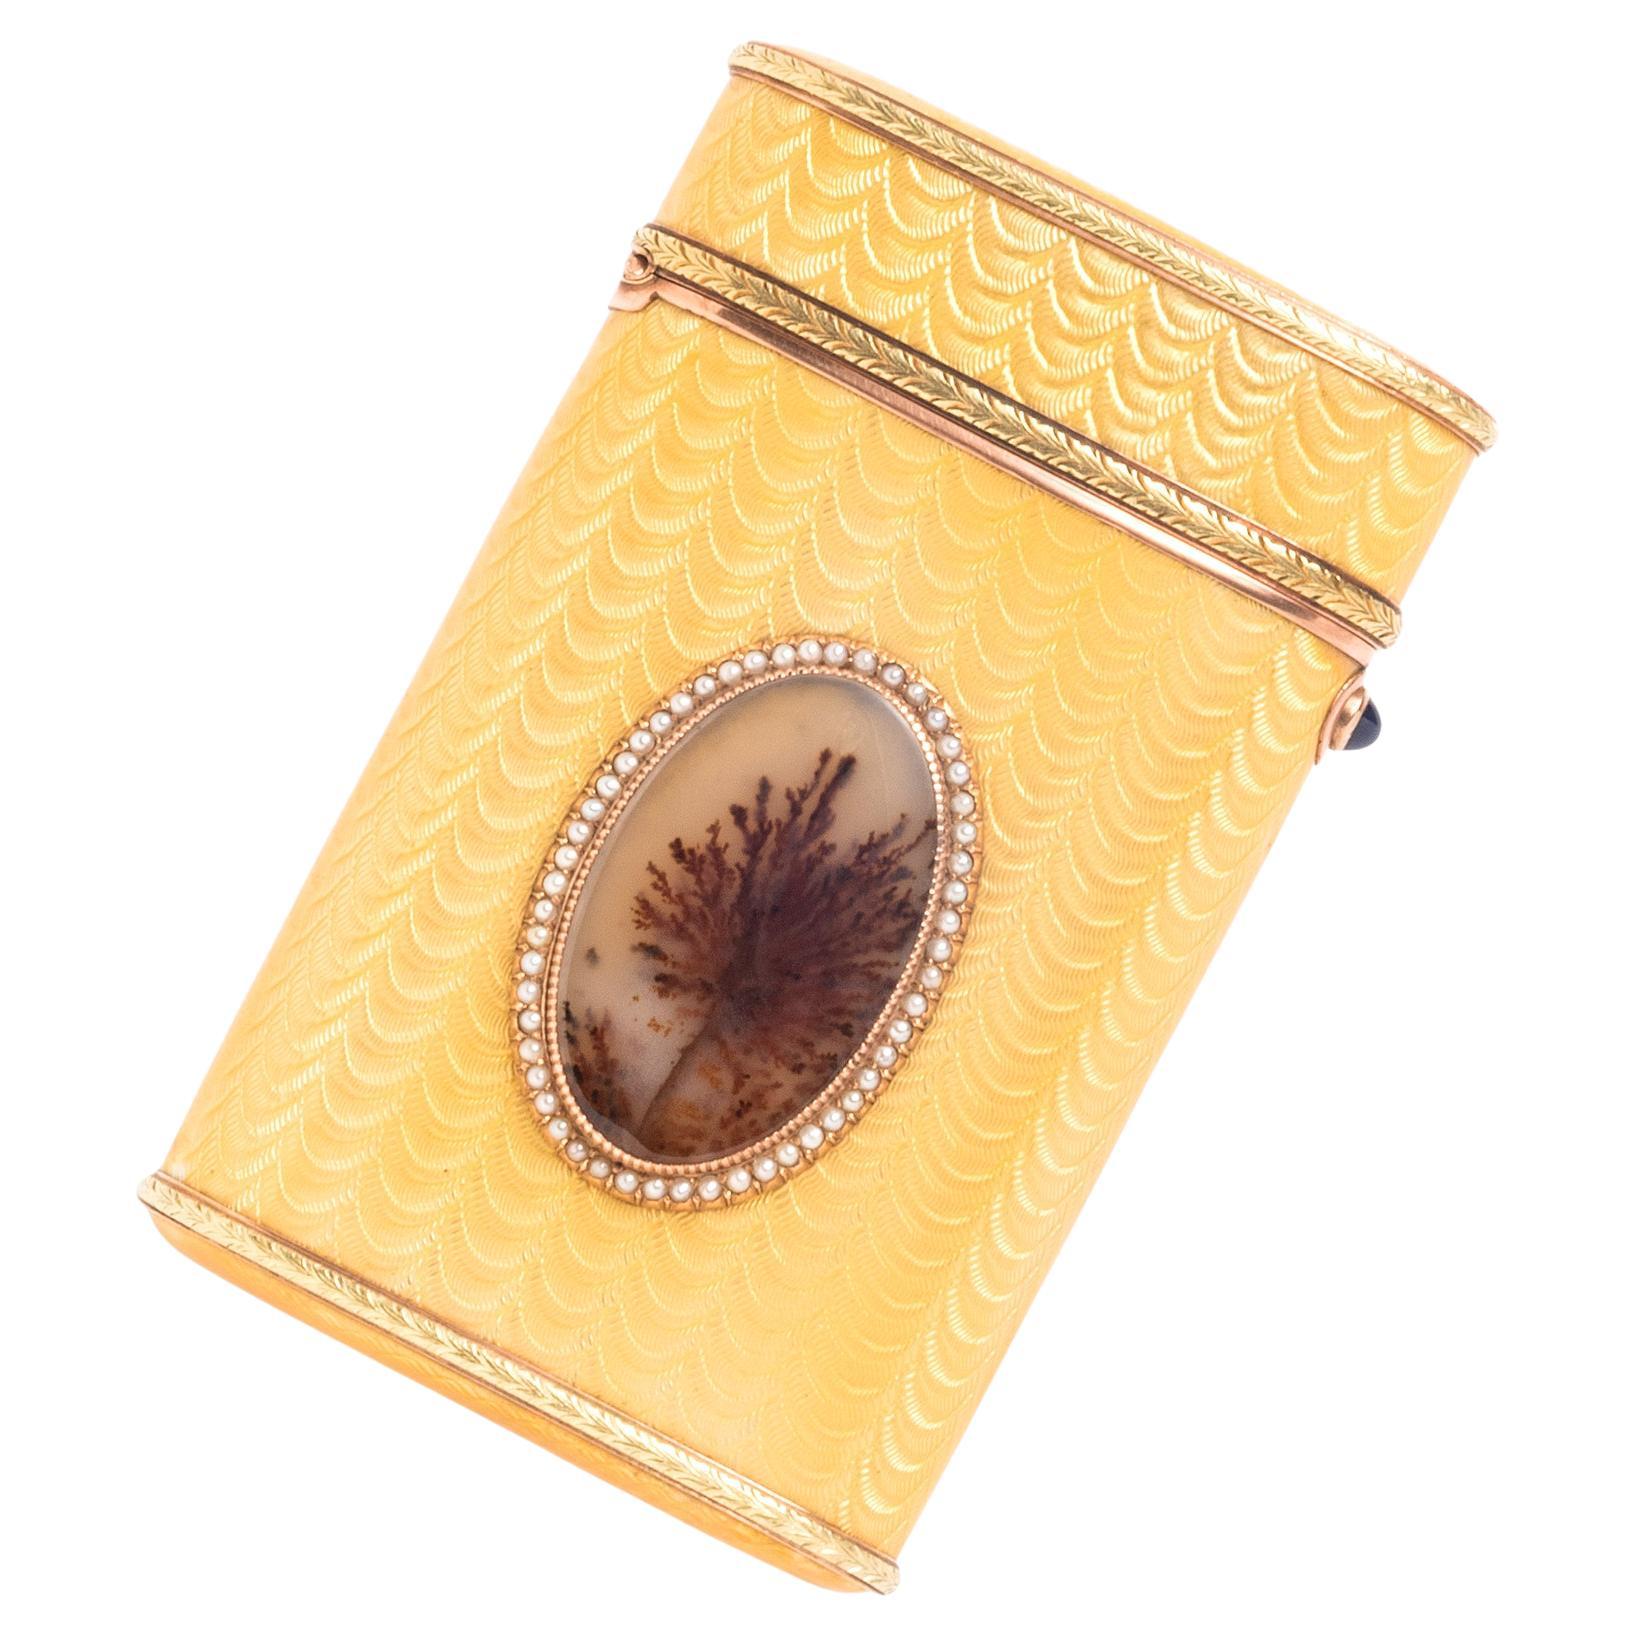 Dieses zweifarbige Zigarettenetui von Fabergé aus Gold und Emaille ist mit einem ovalen Dekor aus Moosachat verziert, das von einer Umrandung aus Saatperlen und Gold umgeben ist. Der Korpus ist mit gelber Guilloche-Emaille und applizierten